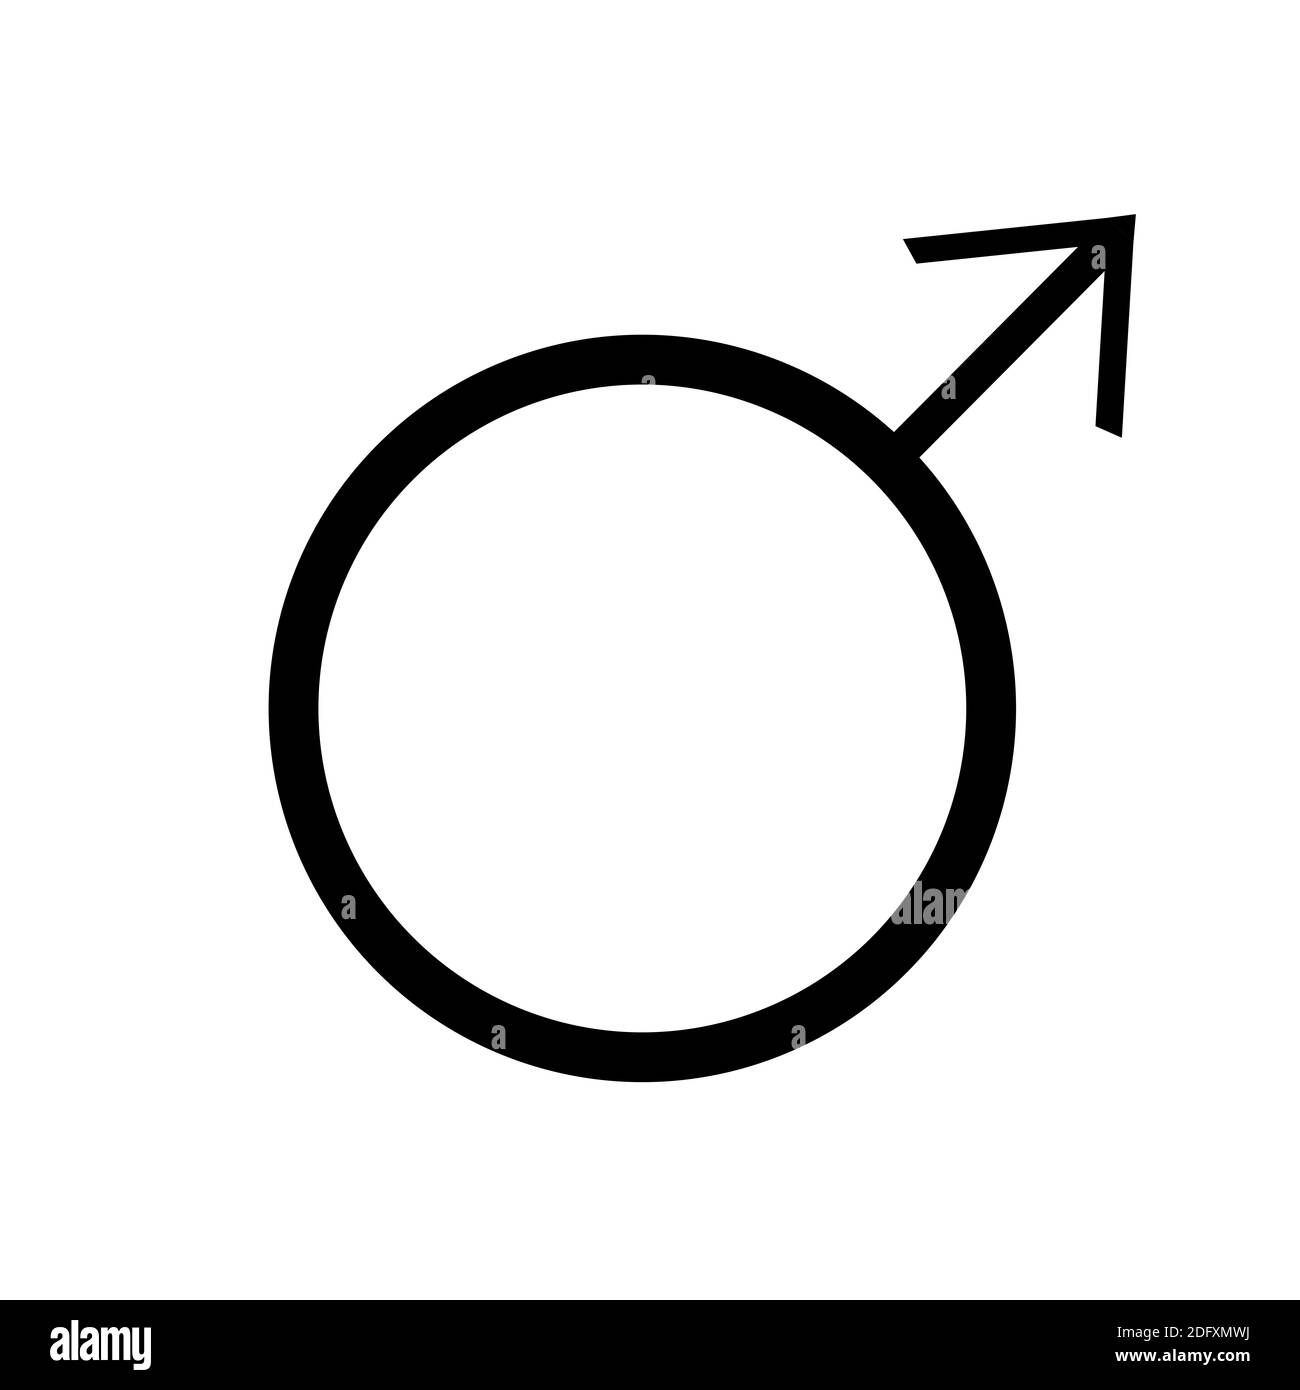 el símbolo de marte, uno de los símbolos de la alquimia. Icono de marte en blanco y negro. Foto de stock